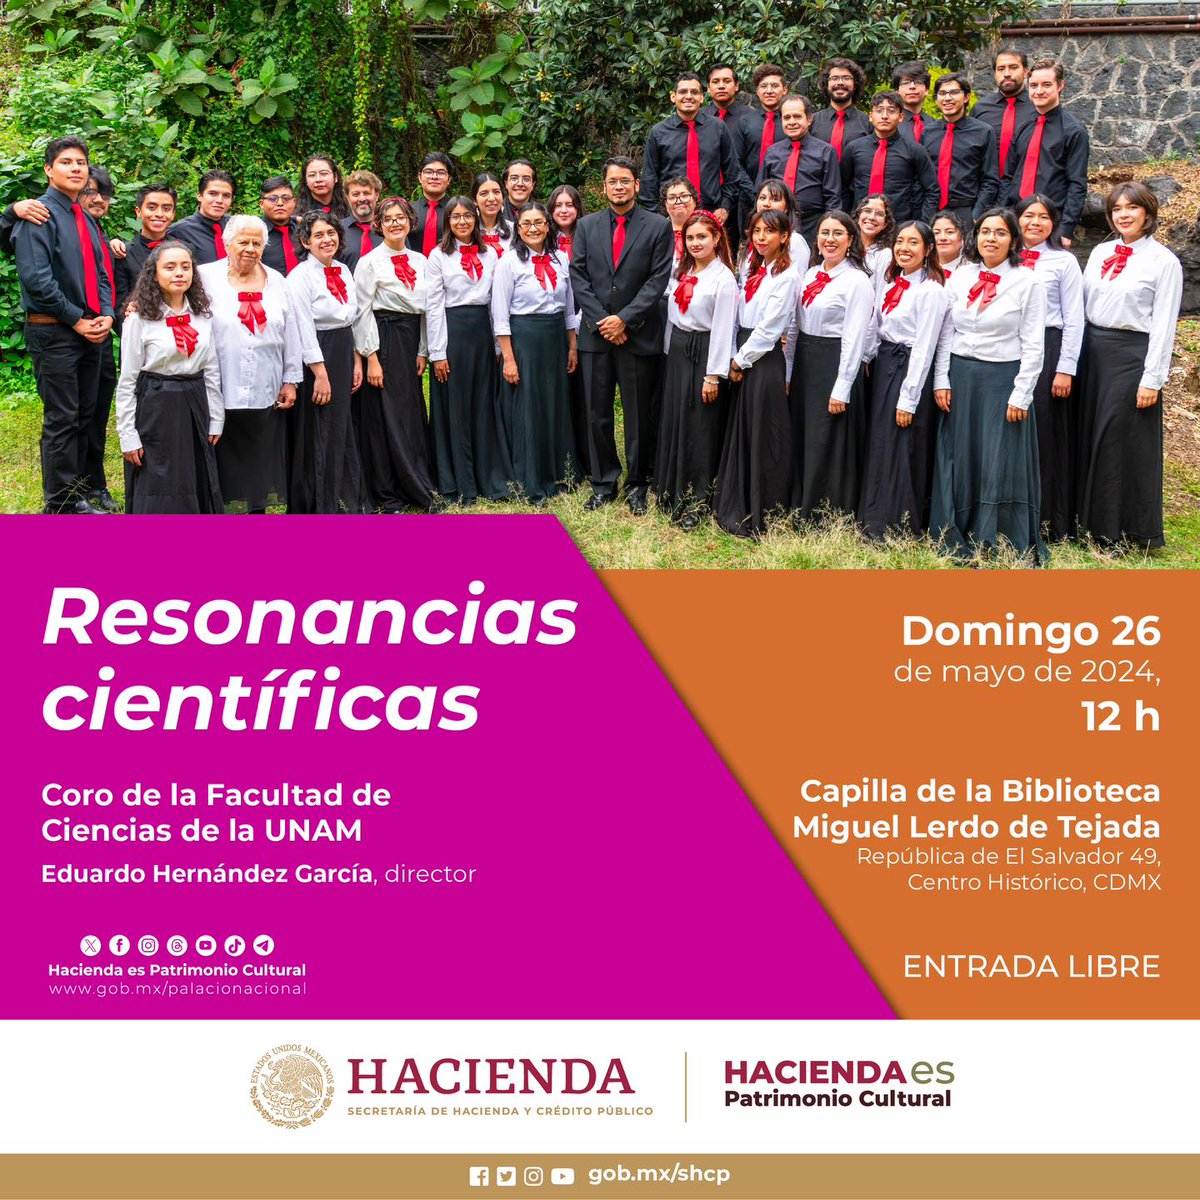 No te pierdas el concierto «Resonancias científicas» del Coro de la Facultad de Ciencias de la @UNAM_MX en la Biblioteca Lerdo de Tejada de @HaciendaCultura. 📍 República de El Salvador 49, #CDMX 🗓️ 26 de mayo ⏰ De 12:00 horas 🎟️ Entrada gratuita